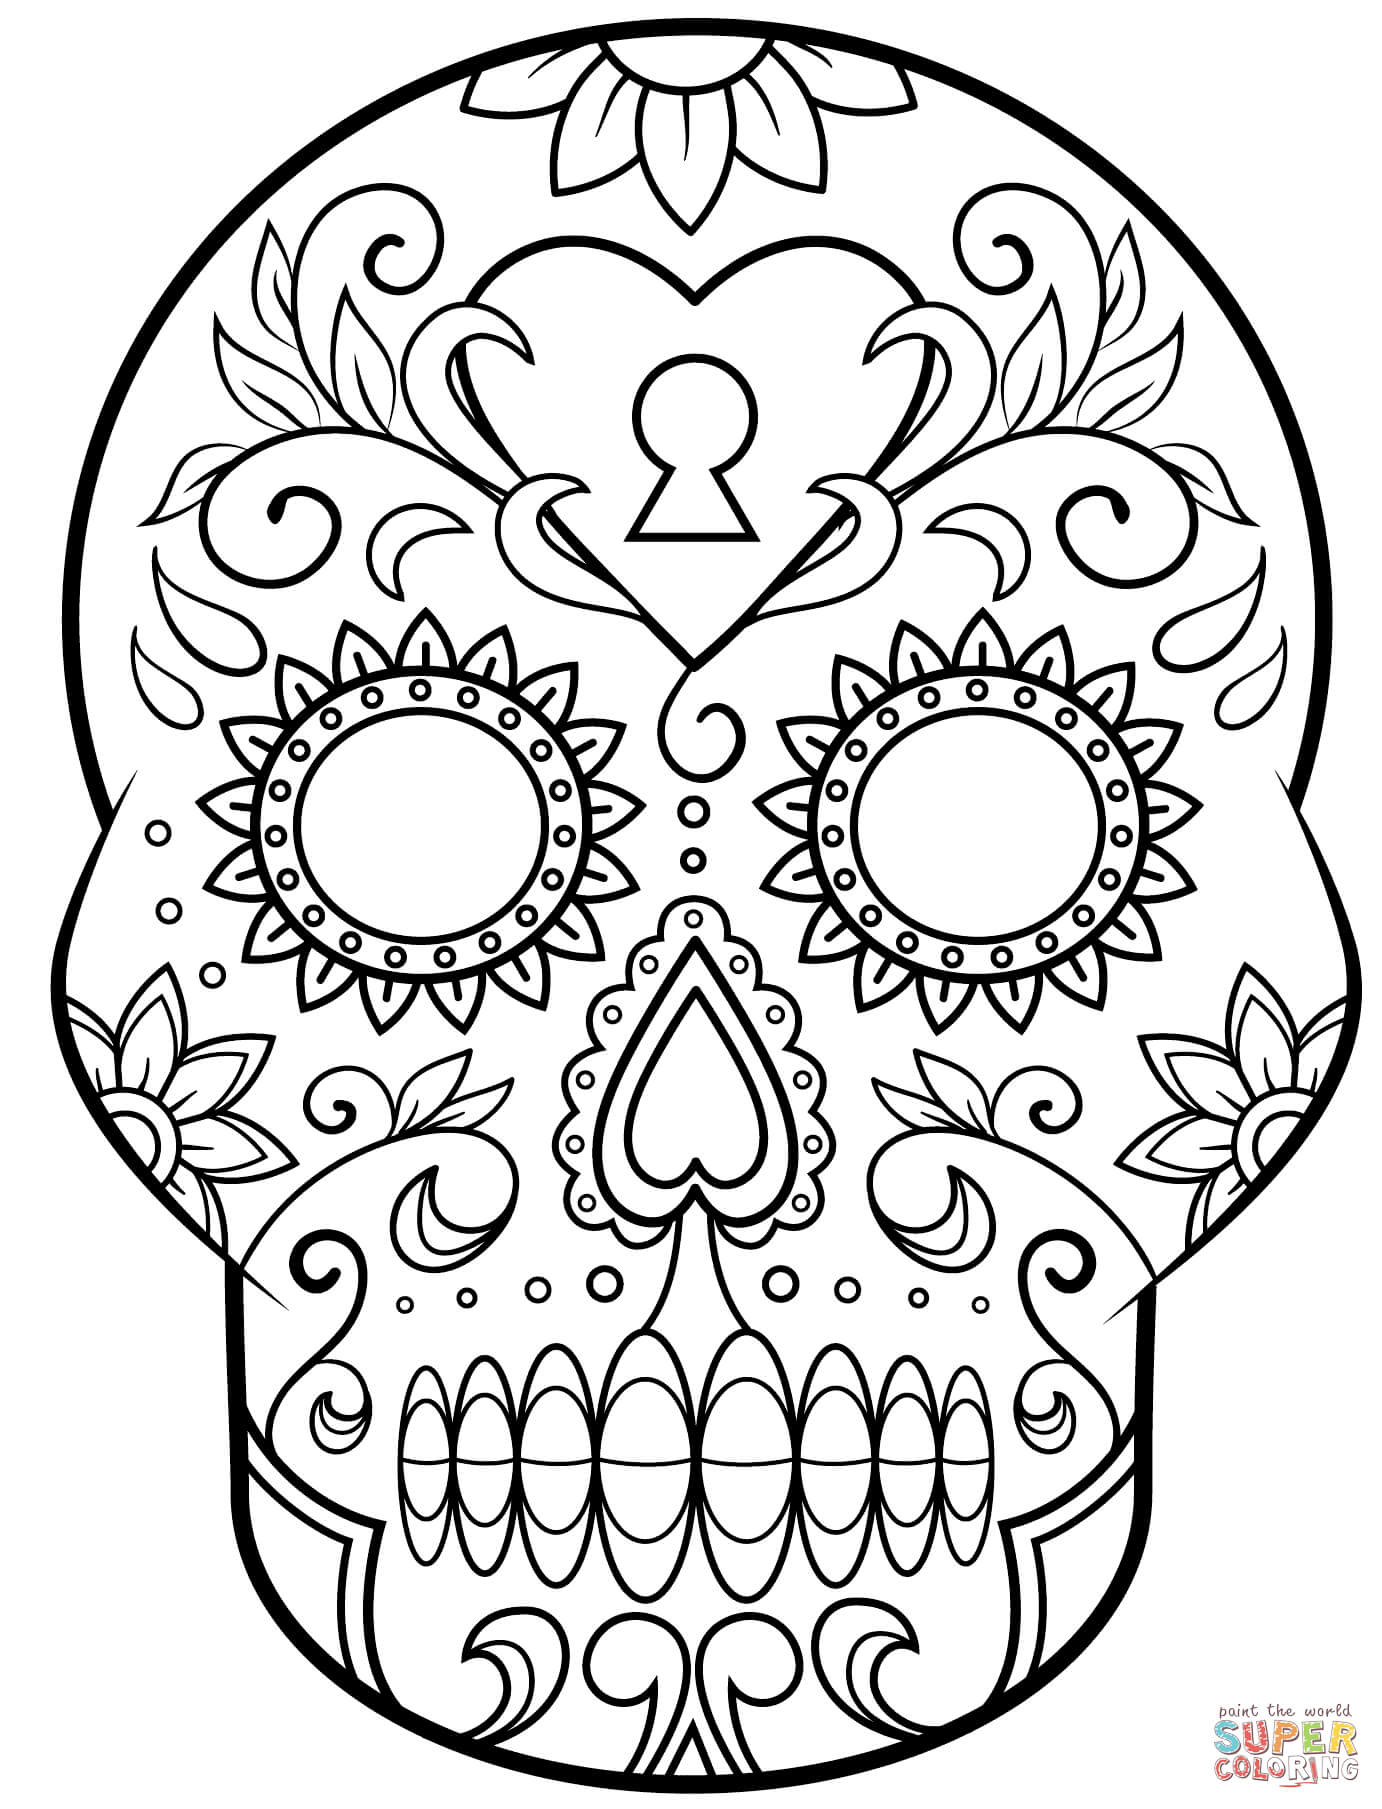 Calavera De Azúcar Del Día De Los Muertos | Super Coloring Regarding Blank Sugar Skull Template